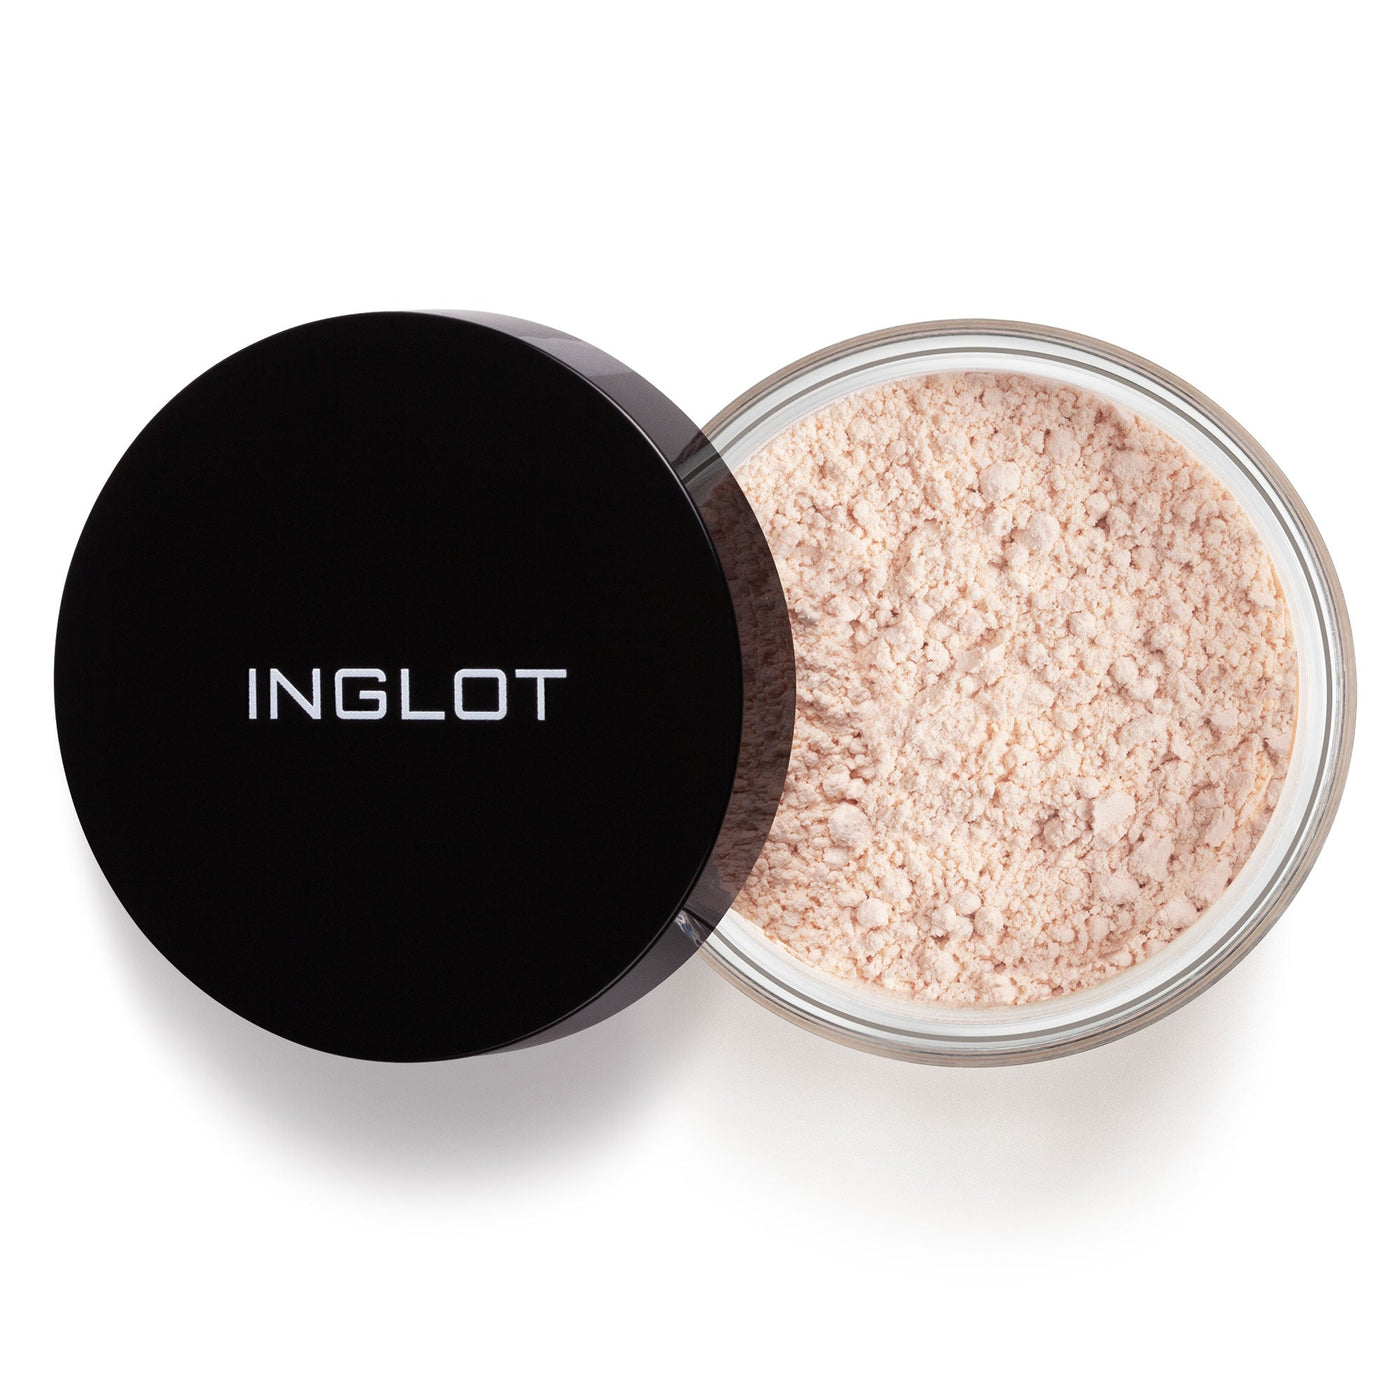 Inglot - Smoothing Under Eye Powder